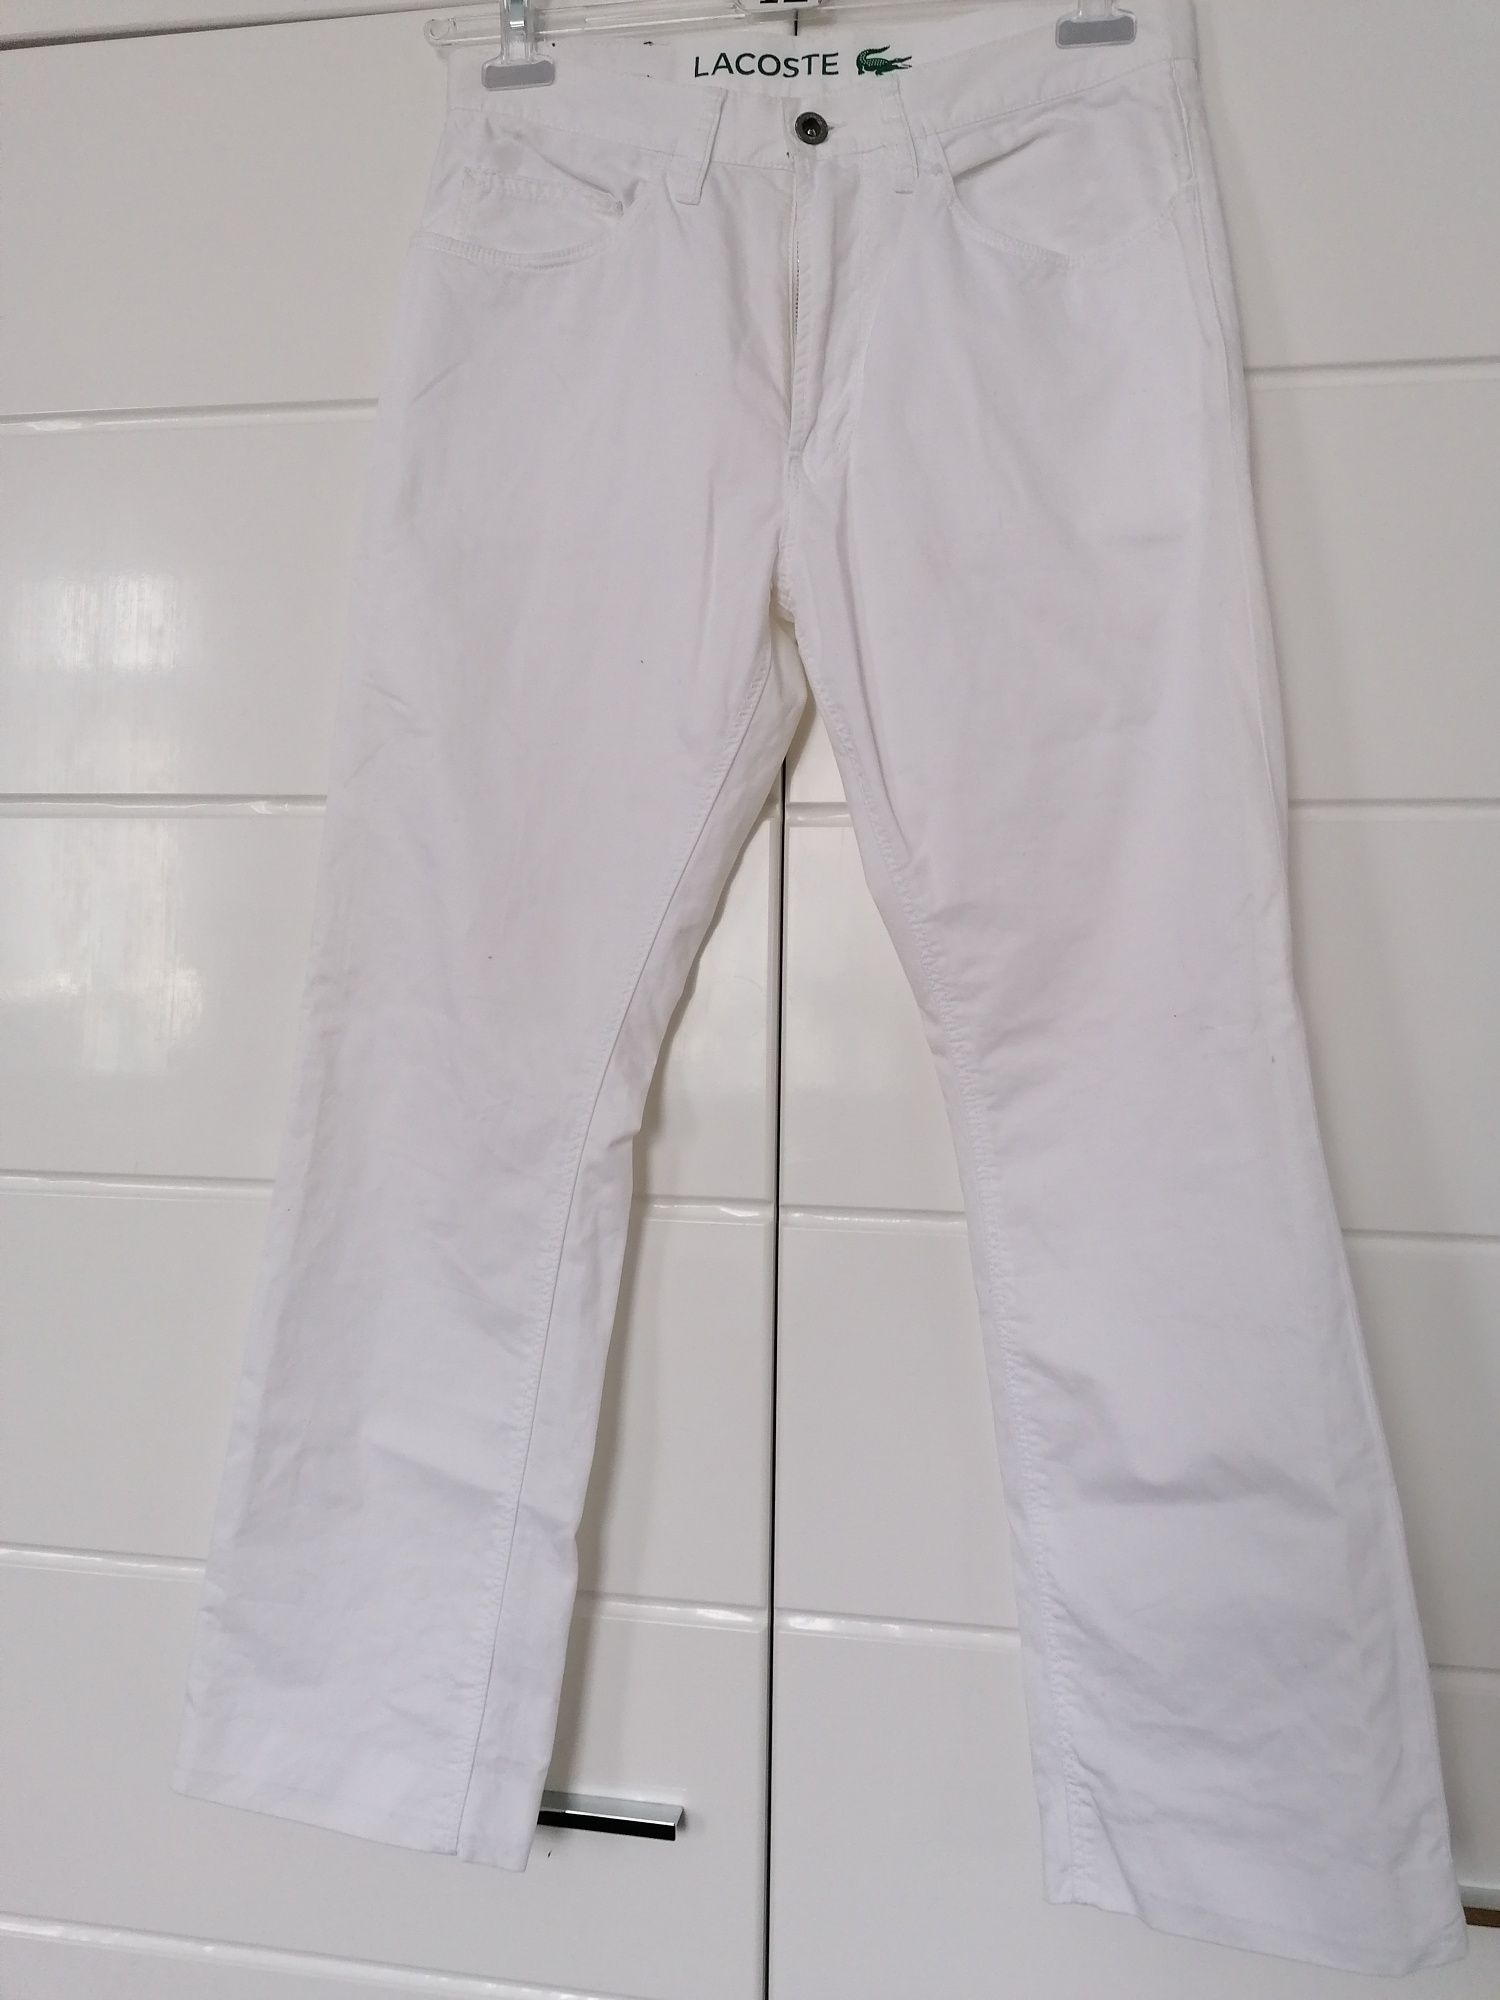 Białe spodnie Lacoste rozmiar 30